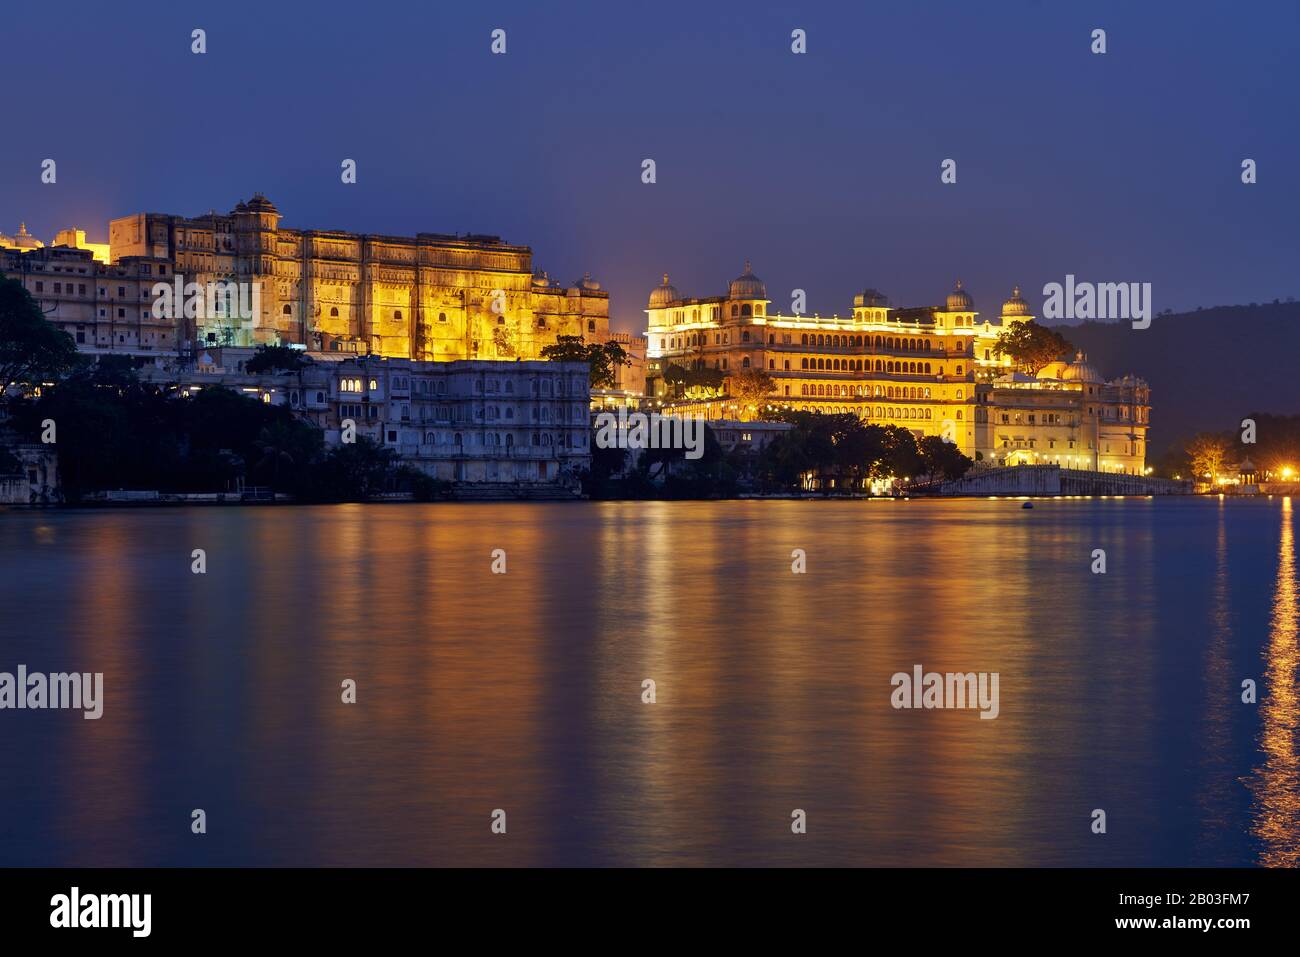 La nuit a tourné au-dessus du lac Pichola sur le palais illuminé de la ville et le palais Taj Fateh Prakash d'Udaipur, Rajasthan, Inde Banque D'Images